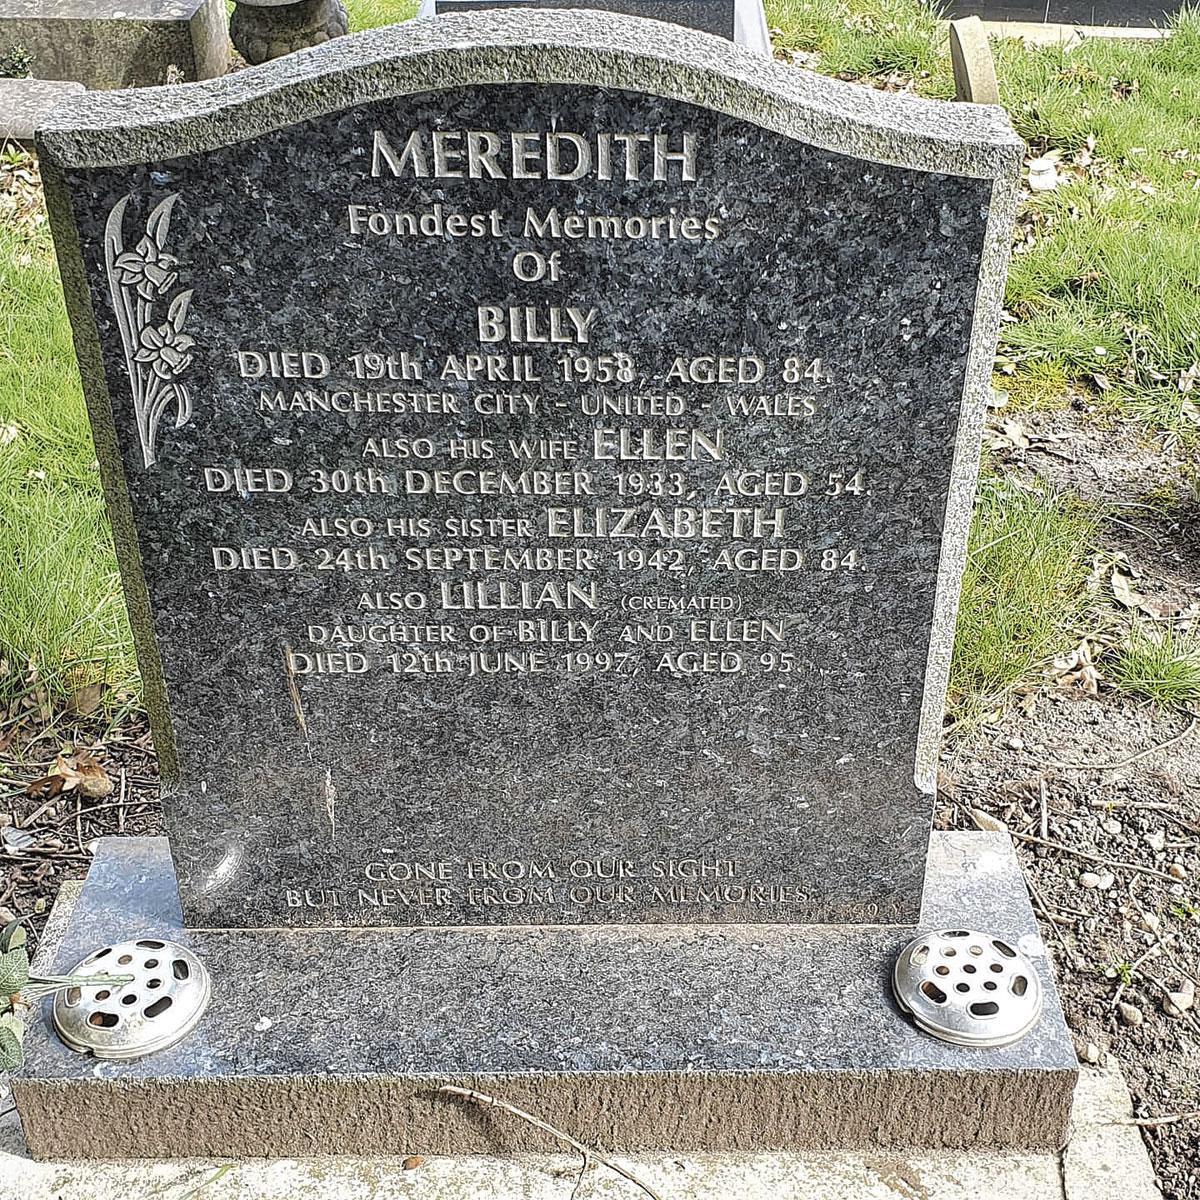 La pierre tombale de Billy Meredith à Manchester a été payée par City et United, entre autres.